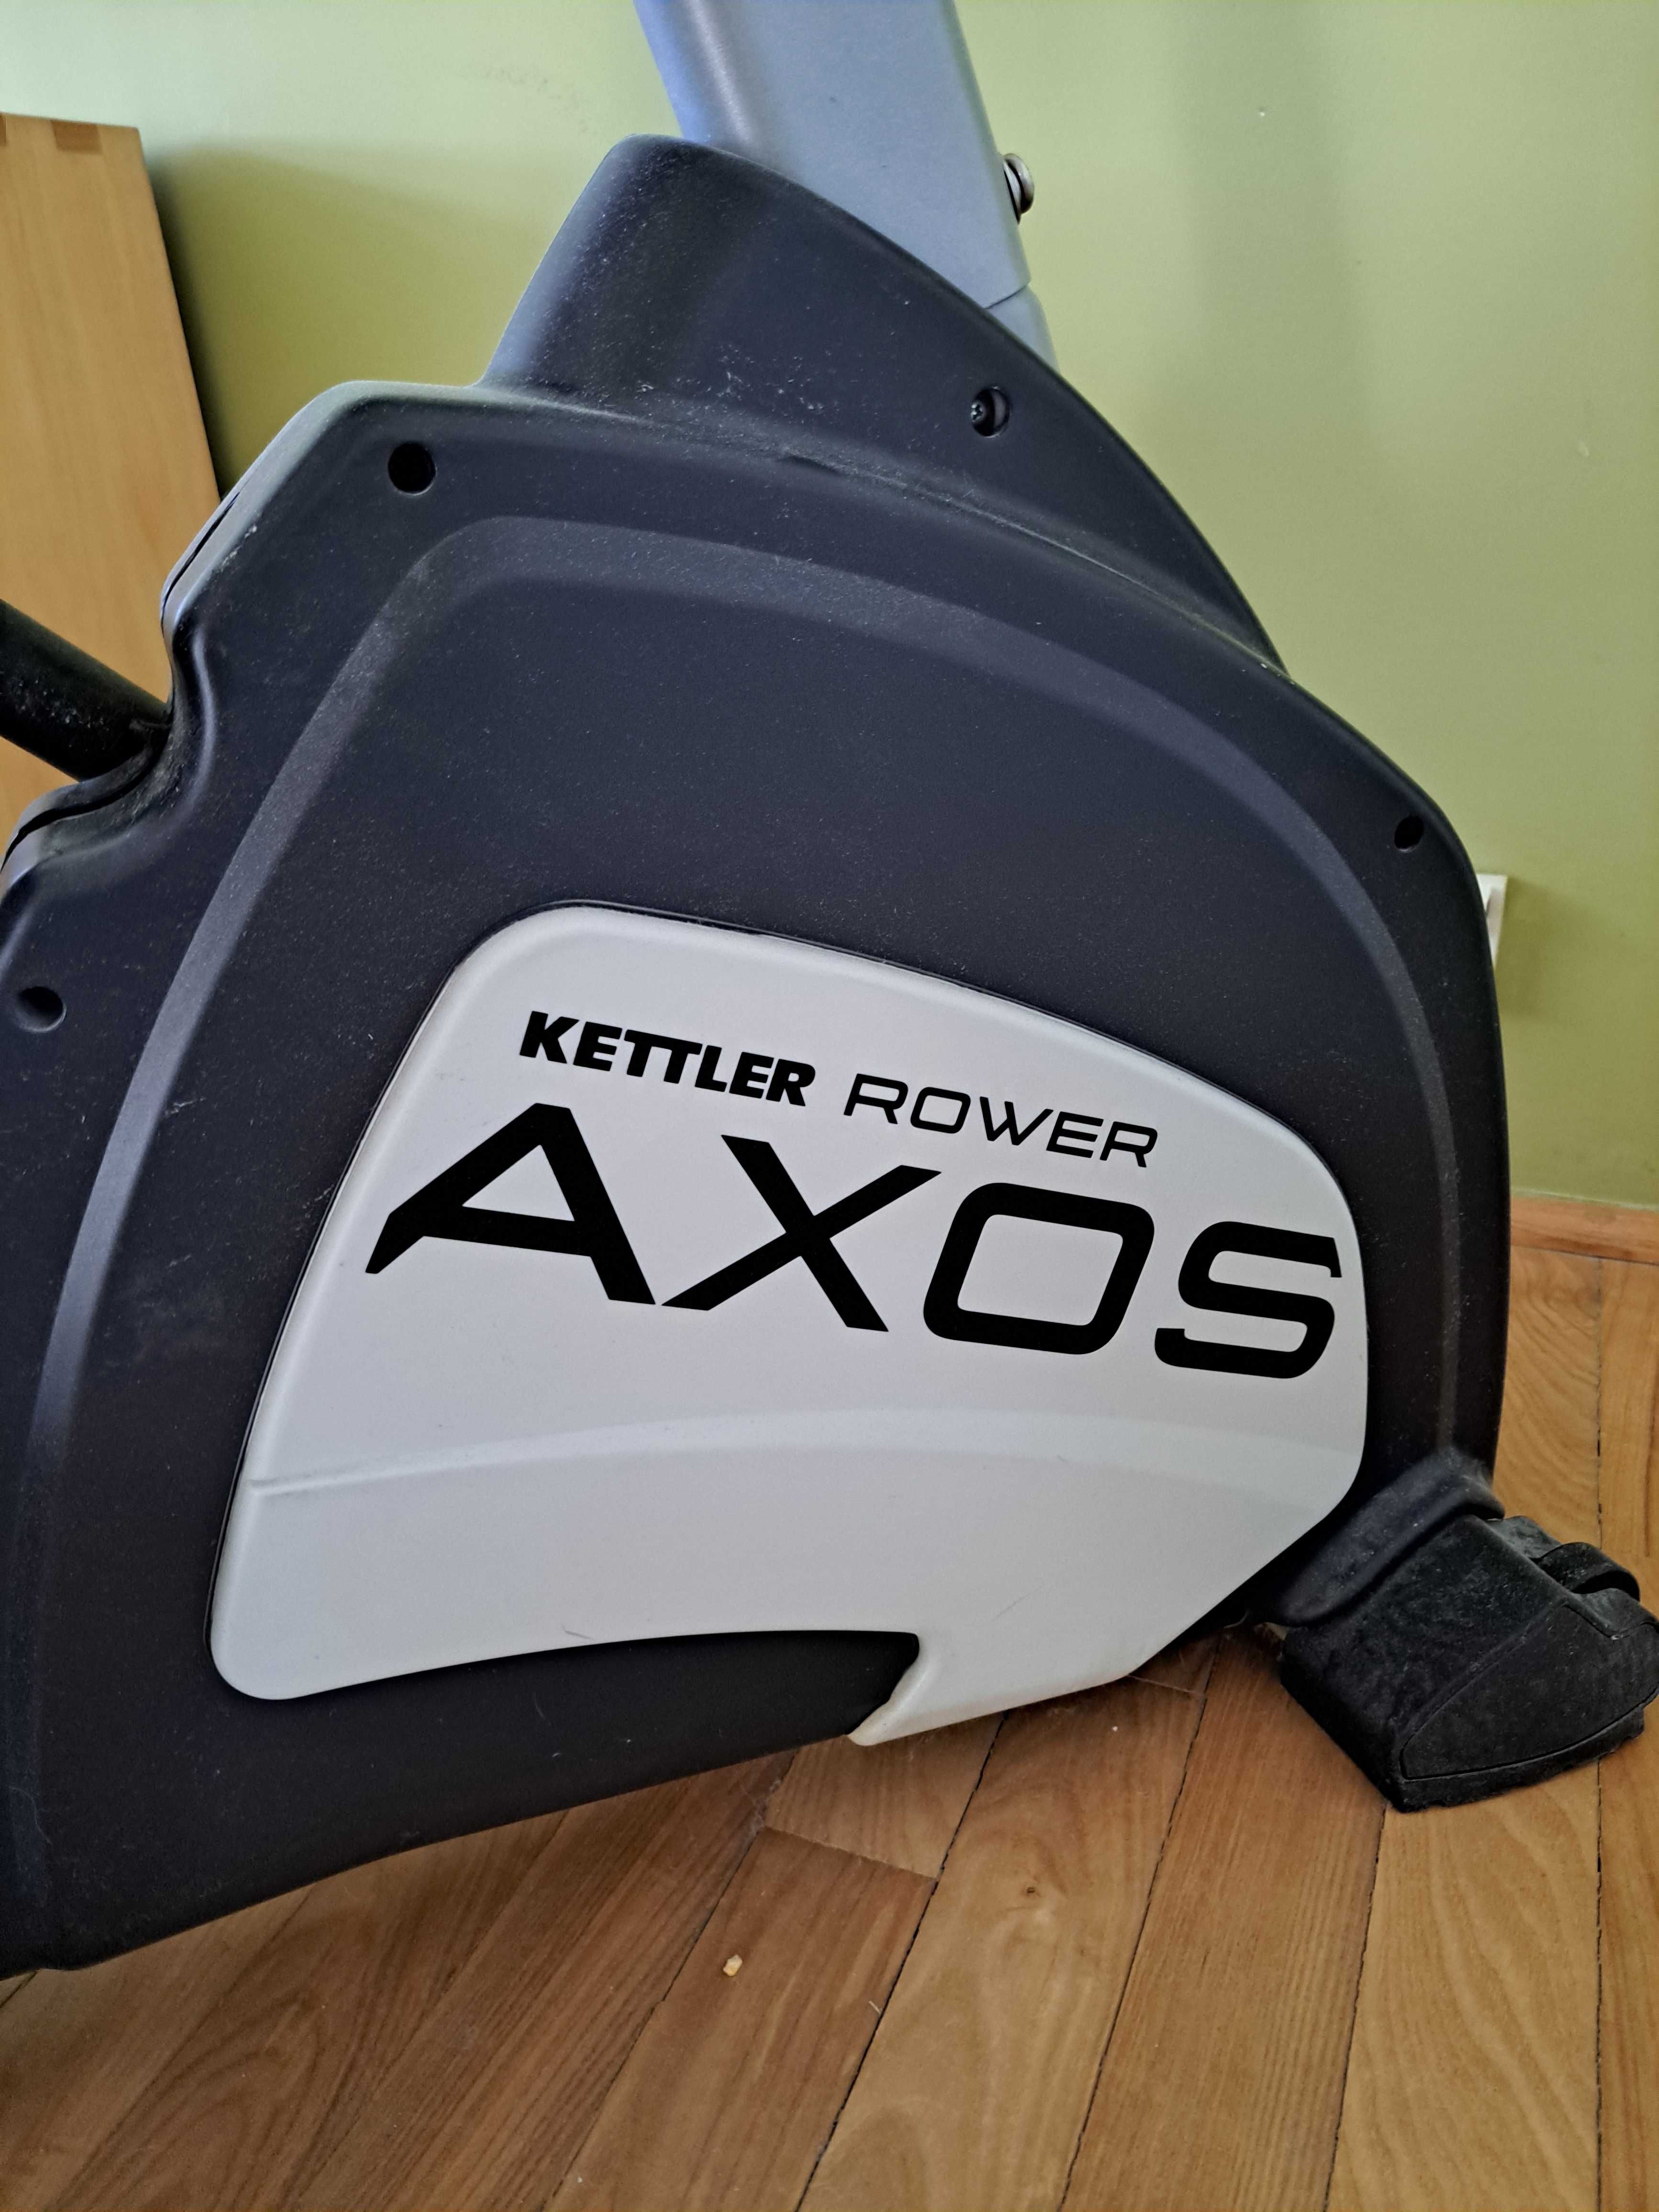 Wiosła treningowe: Kettler Wioślarz Axos Rower